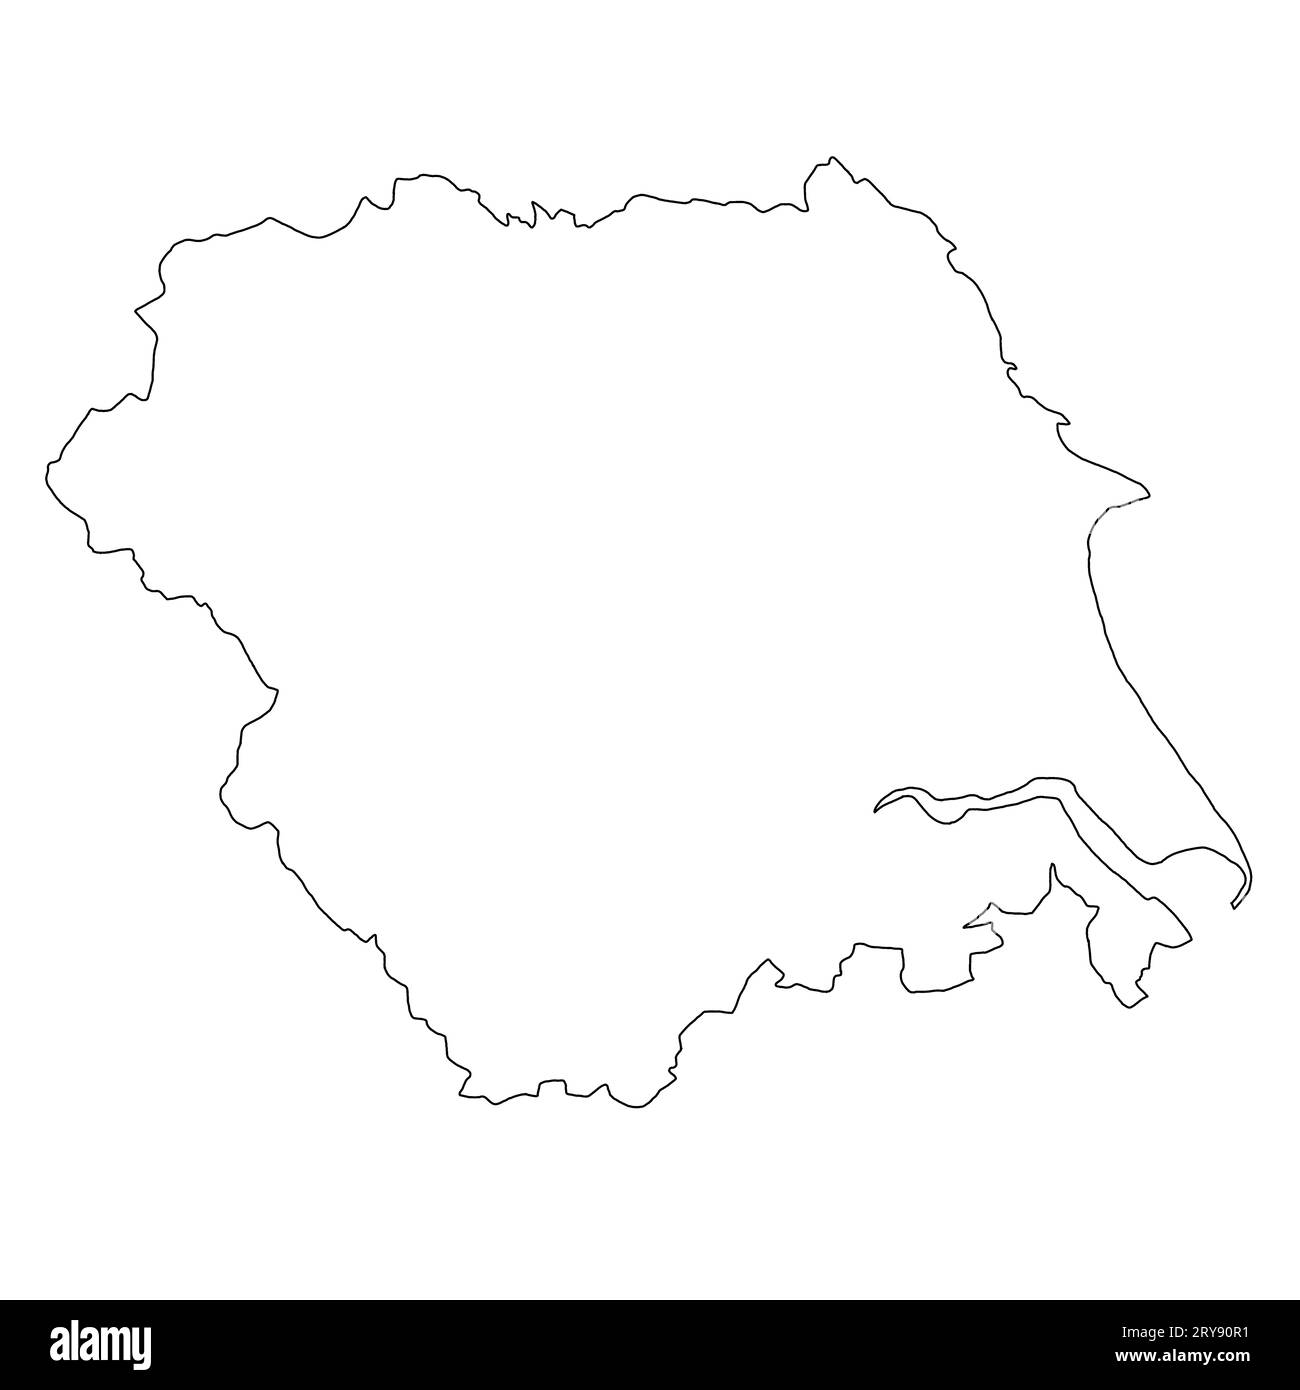 Die Umrisskarte von Yorkshire and the Humber ist eine Region Englands mit Grenzen Stockfoto